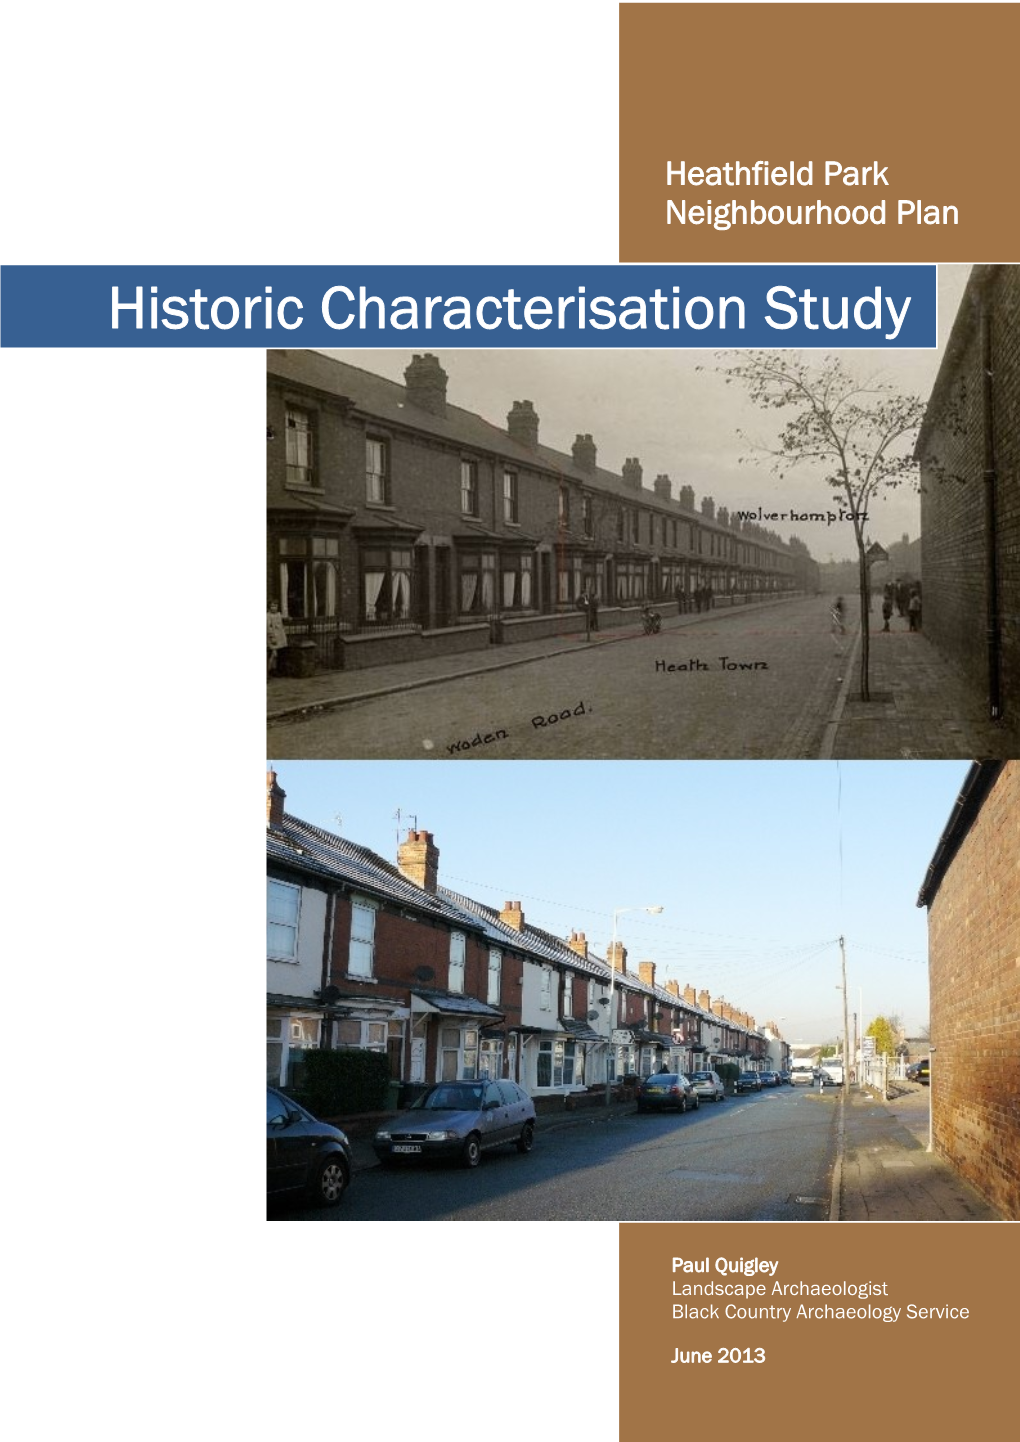 Heathfield Park Historic Characterisation Study